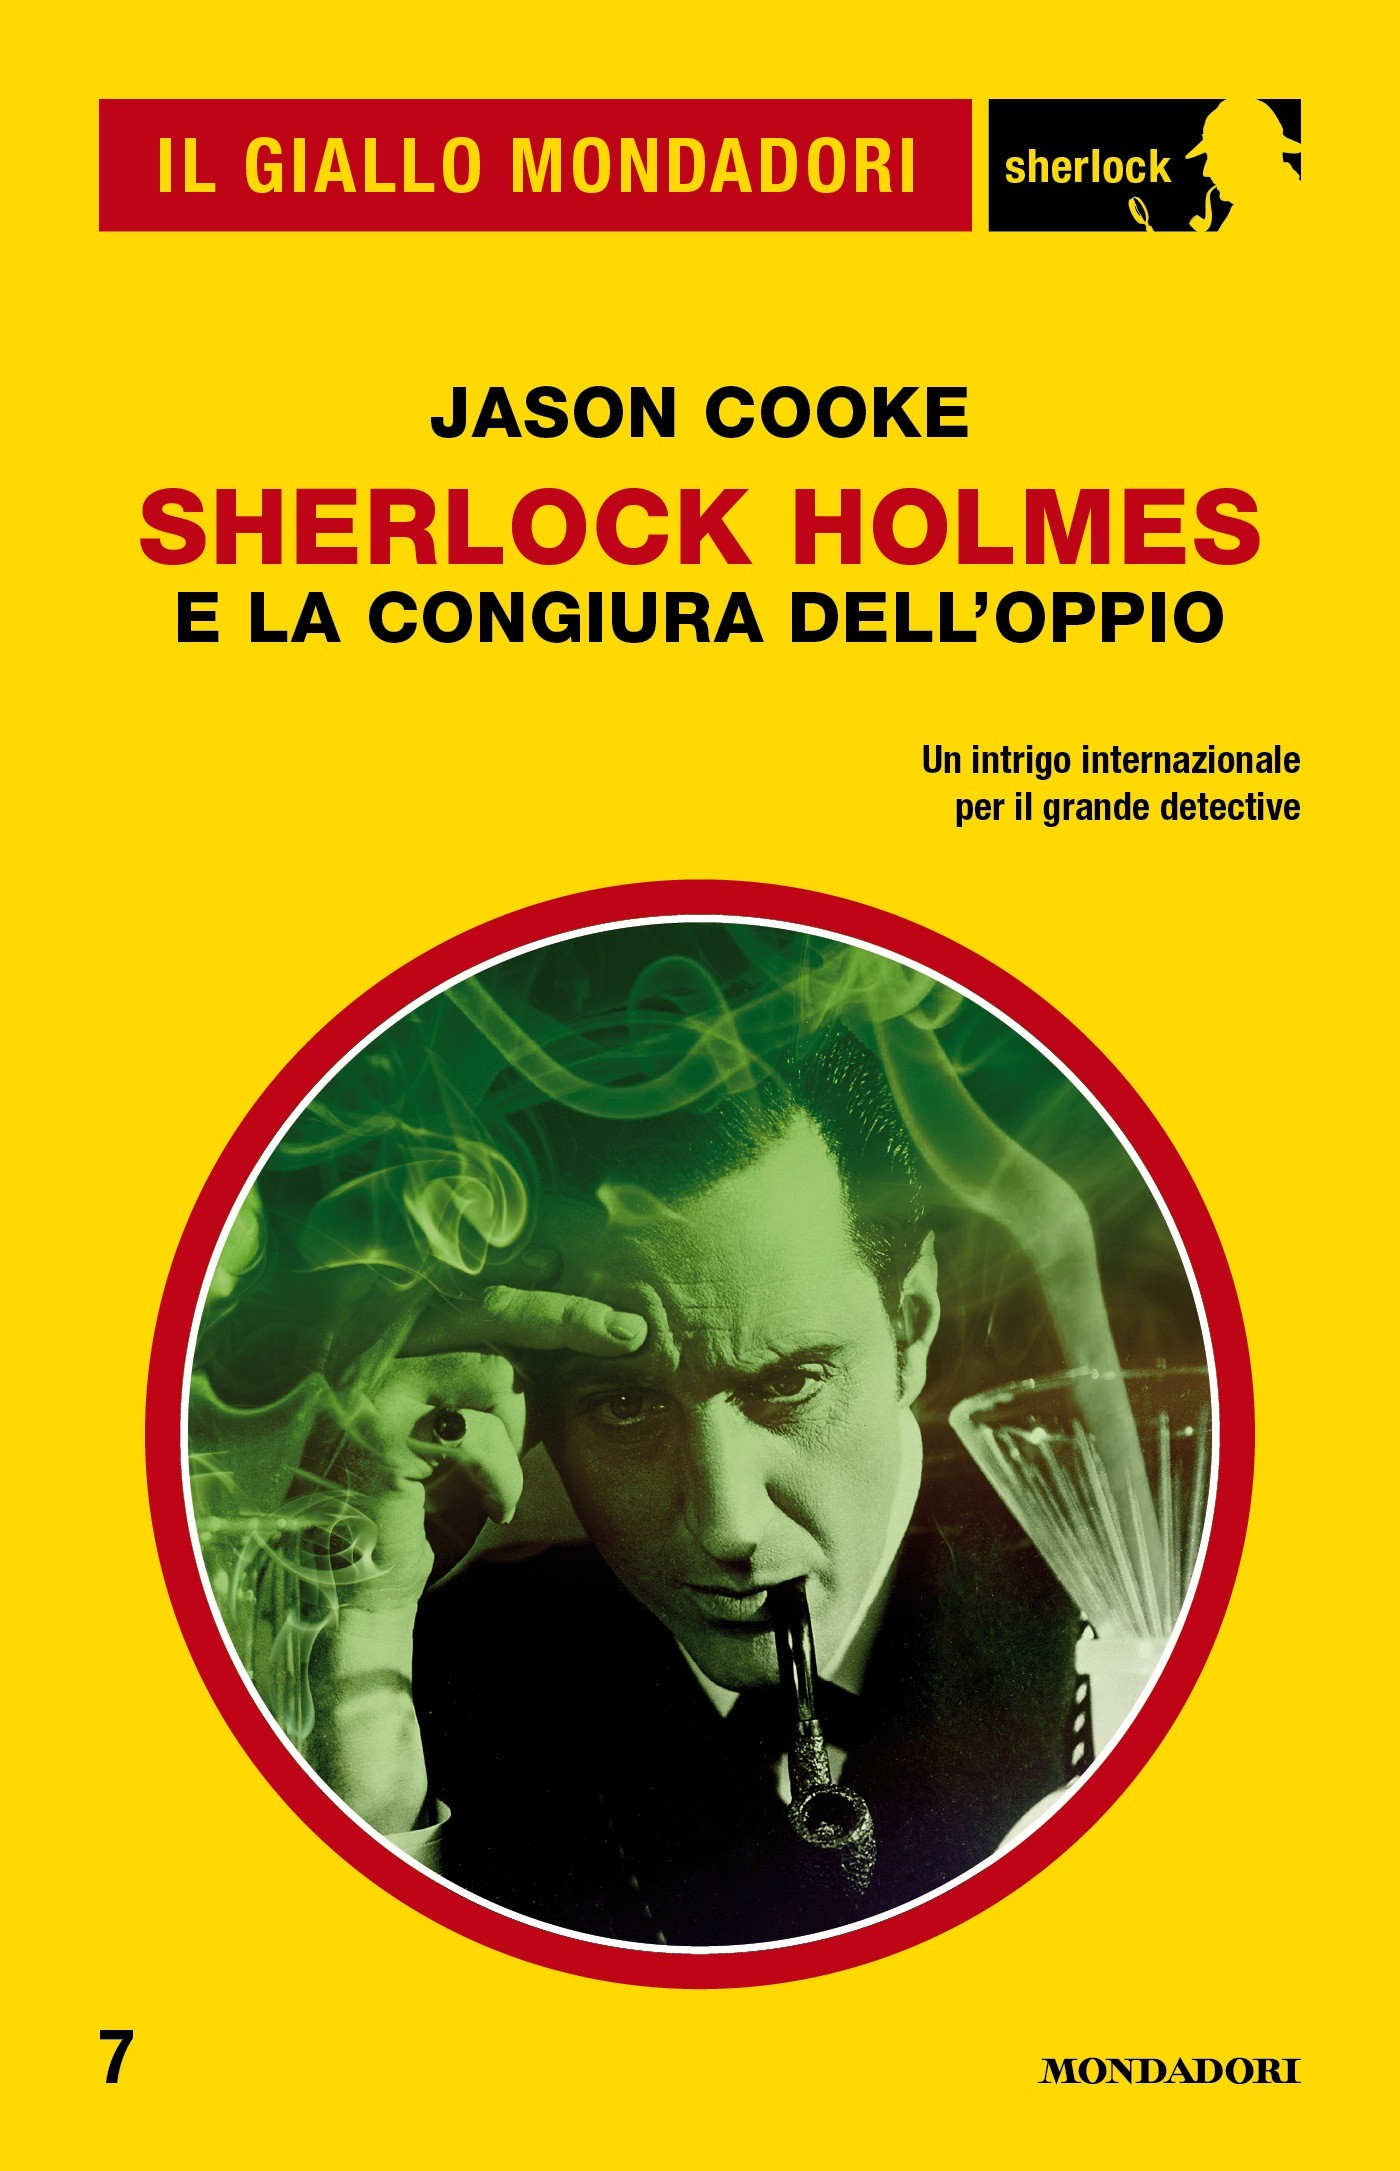 Sherlock Holmes e la congiura dell'oppio (Il Giallo Mondadori Sherlock) - Librerie.coop